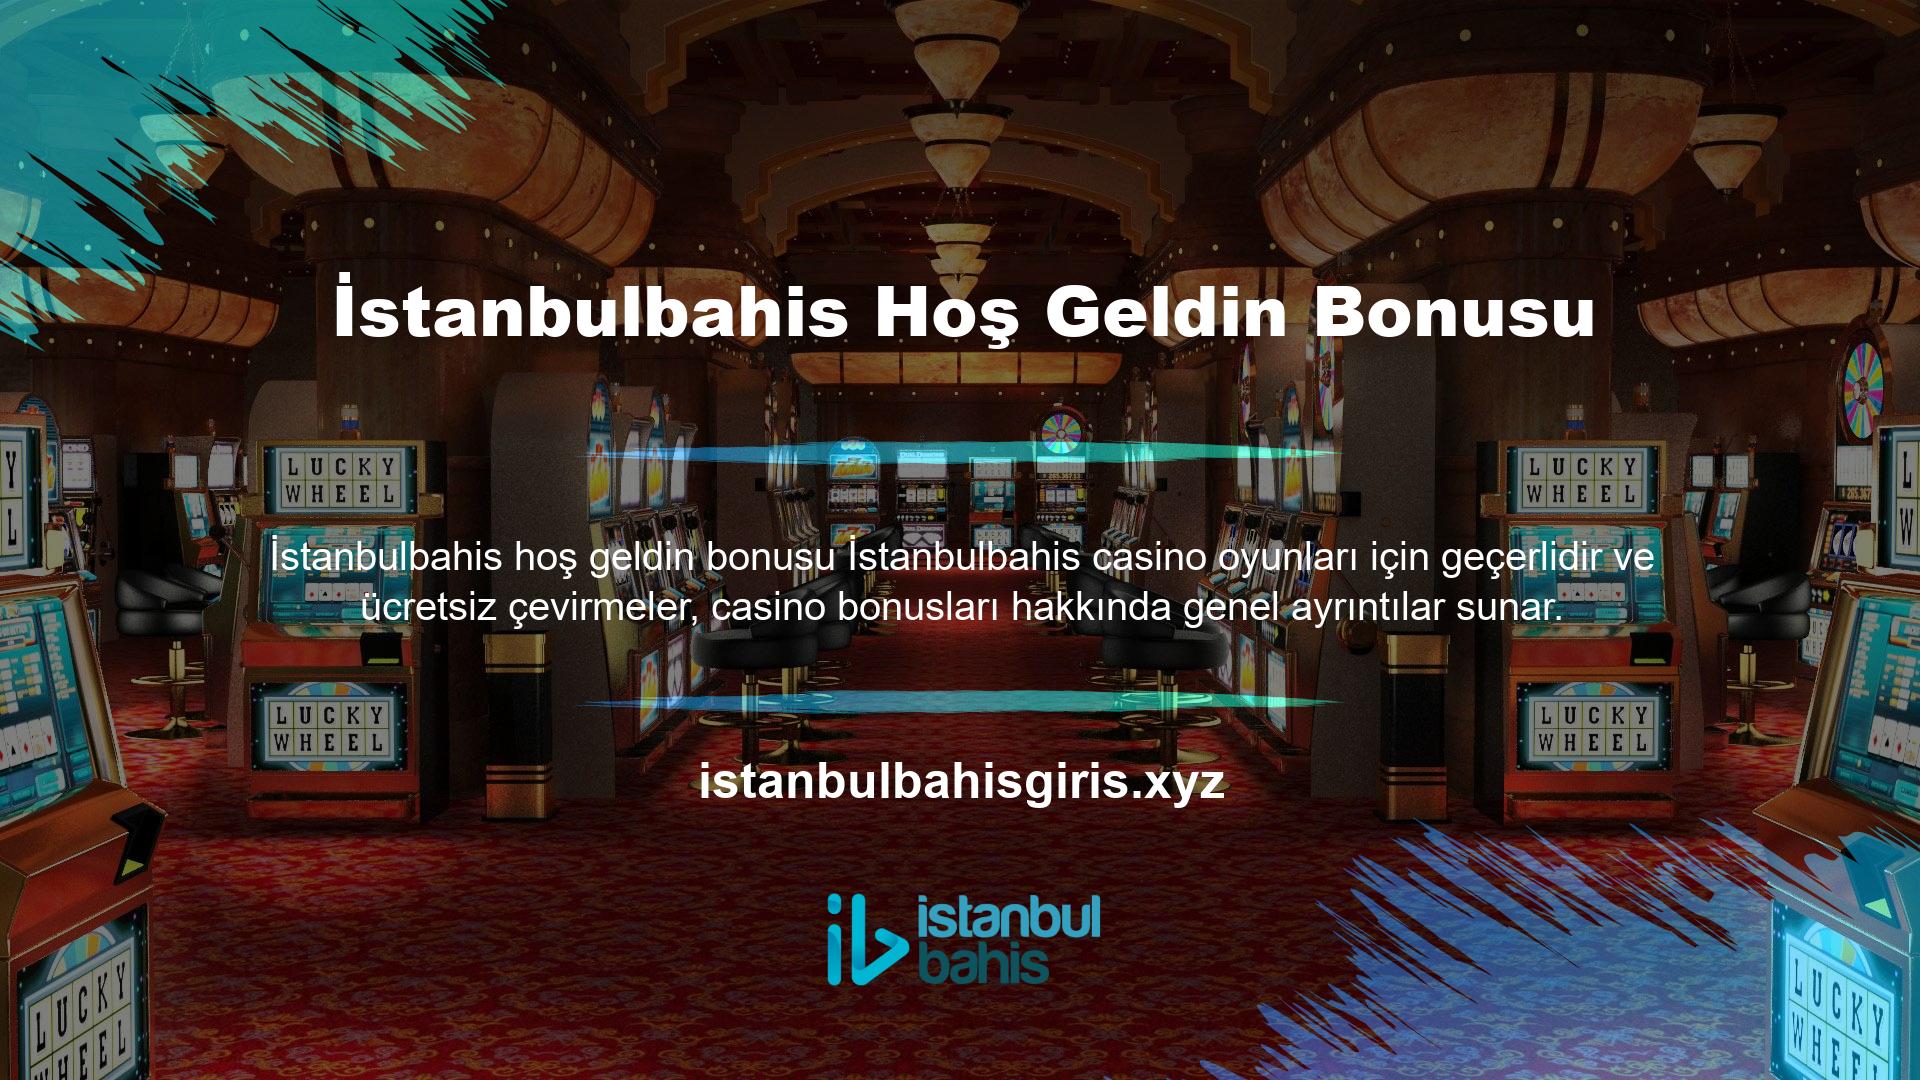 Tüm site üyeleri için ücretsiz bir bonusla başlayın ve oyun içi indirim bonusunu ortadan kaldırın İstanbulbahis Casino web sitesi tüm kullanıcılarına bonuslar sağlıyor